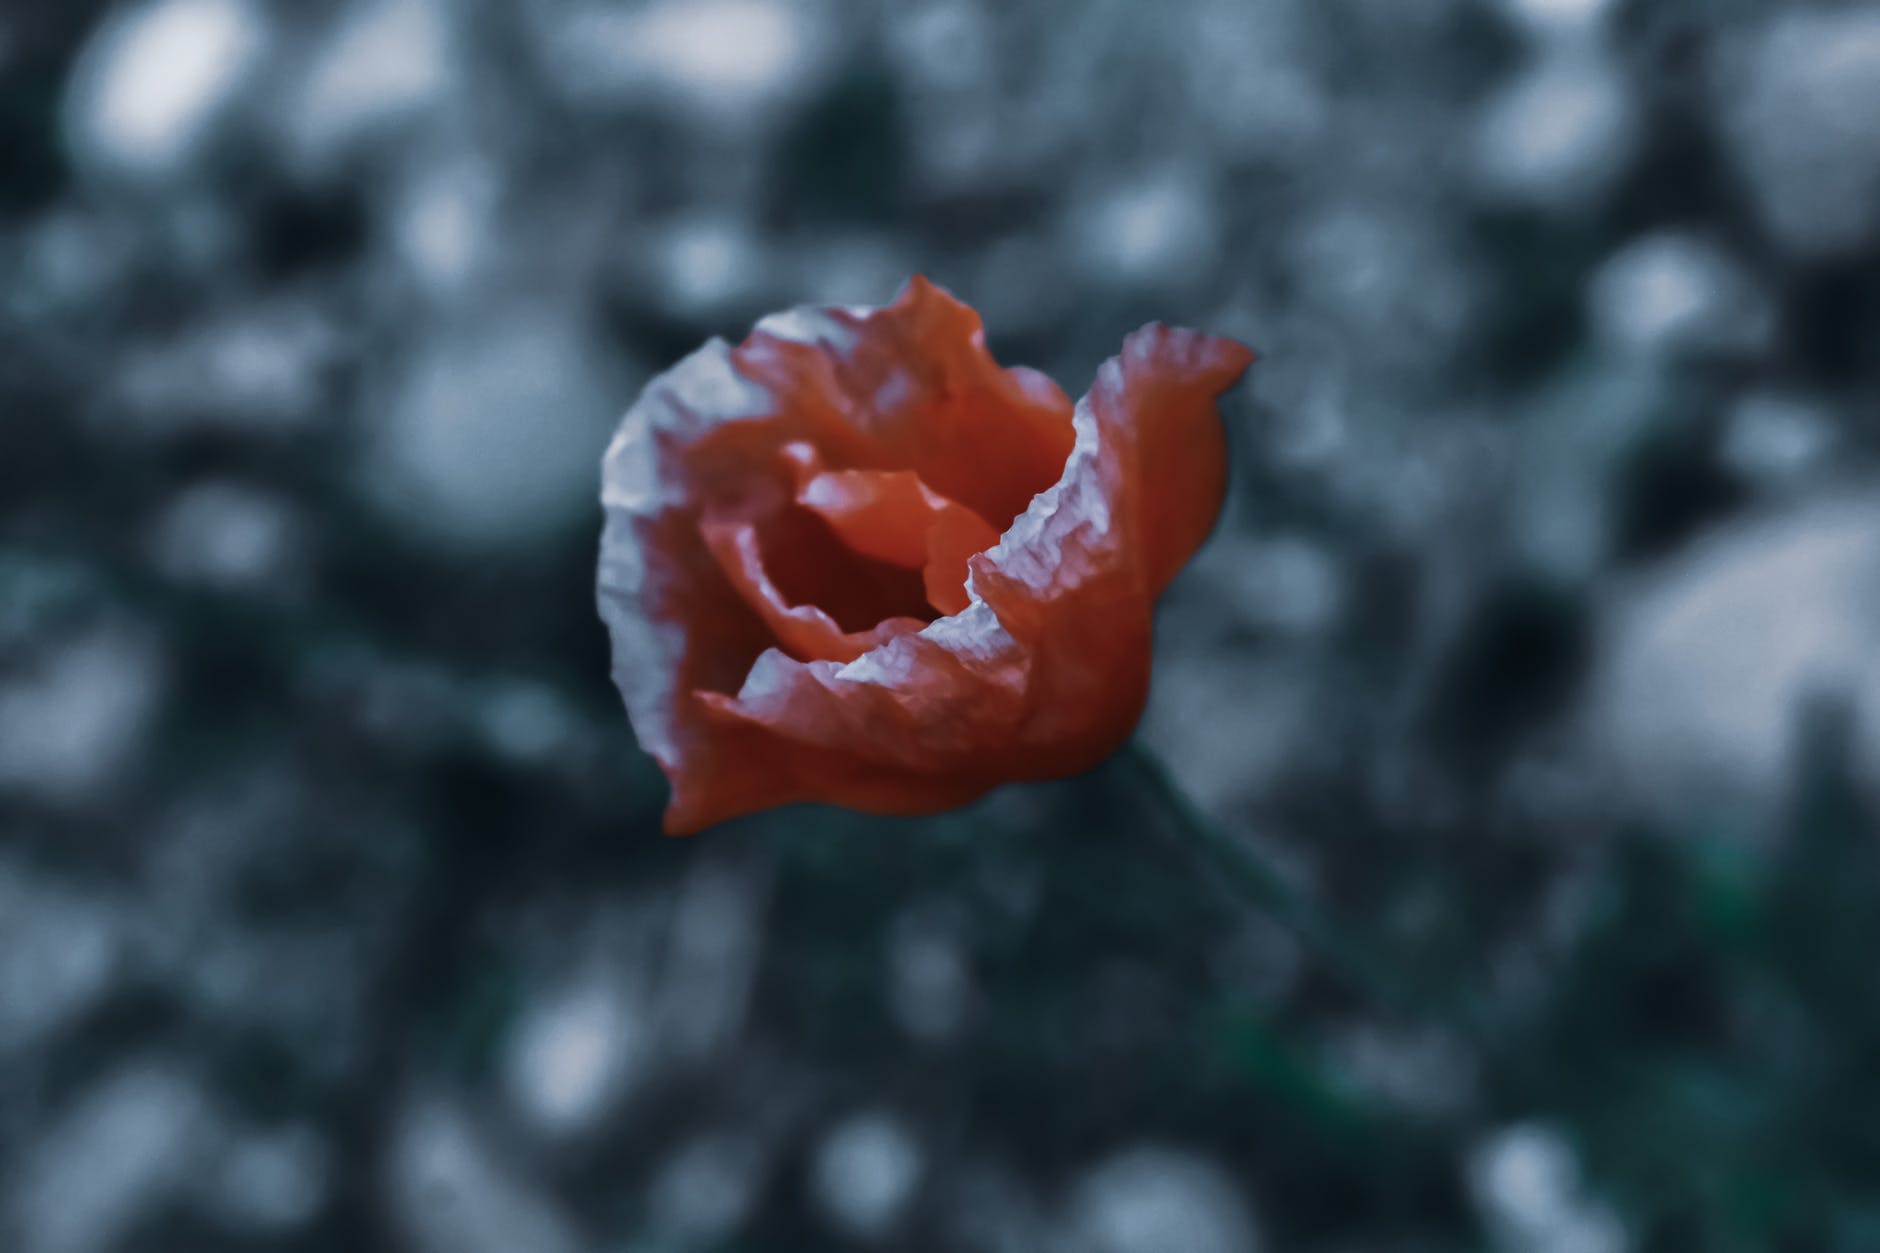 積もる雪に、一束の赤い花を